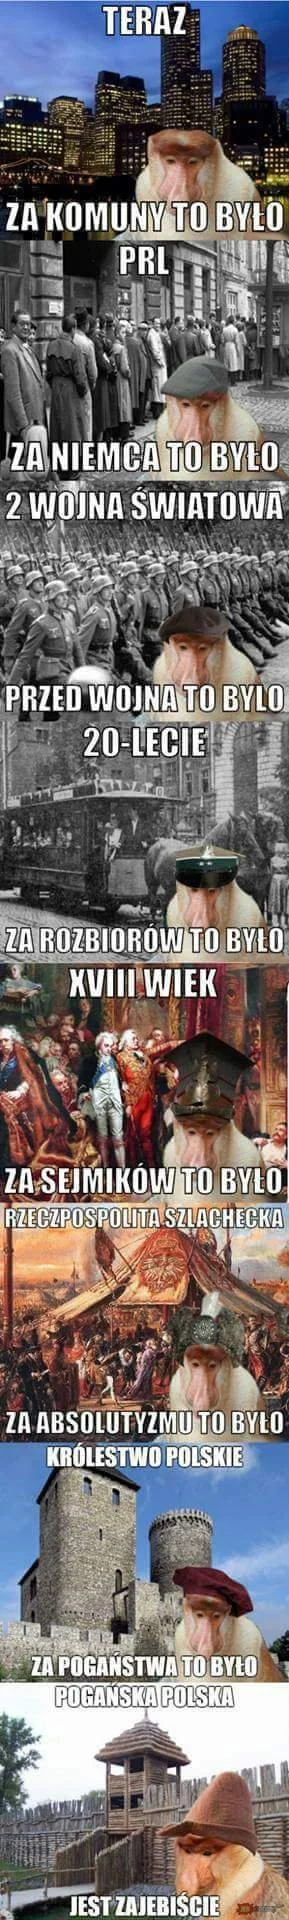 TOMXT - Przed 966r to była polska 
Nie to co teraz kurła
#heheszki ##!$%@? #polak#pol...